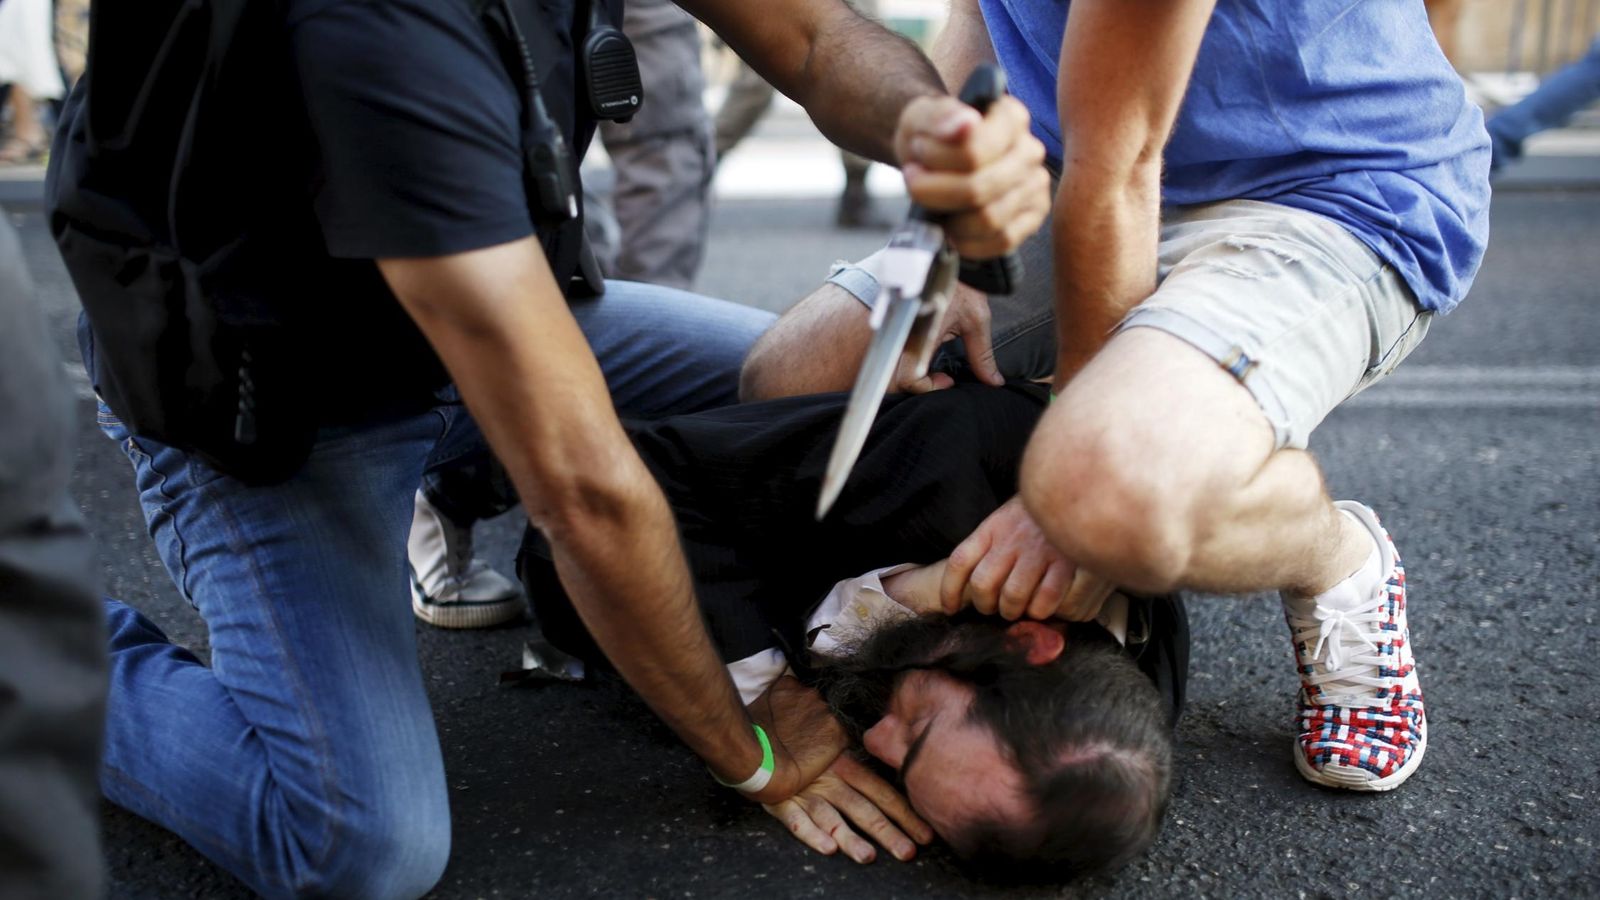 Foto: Dos personas desarman al atacante. (Reuters)